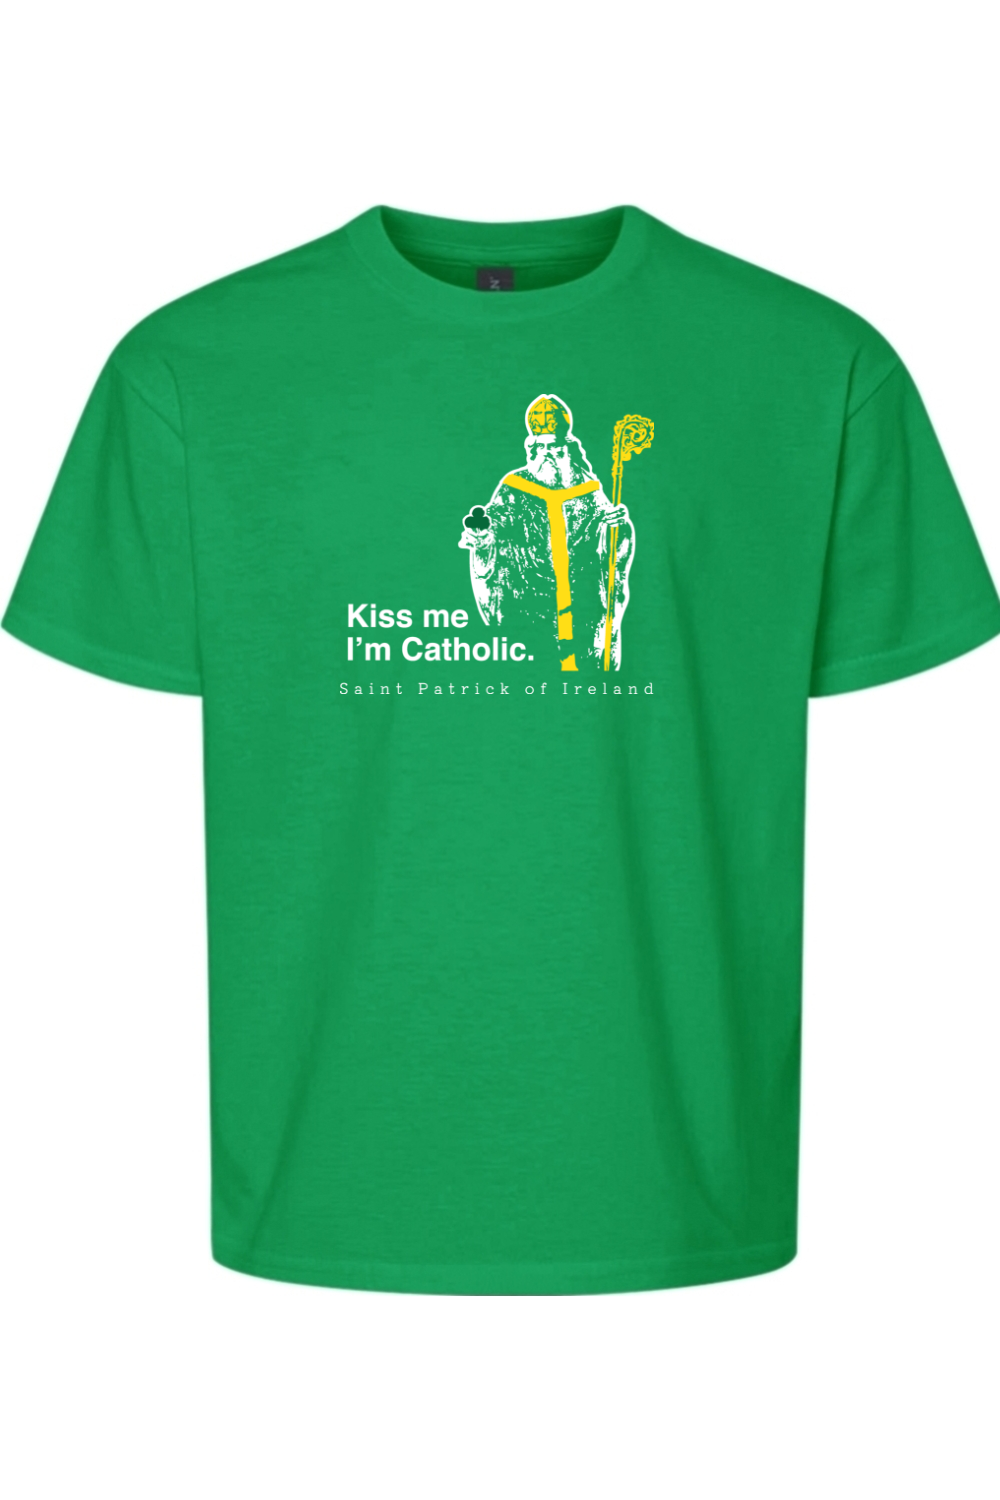 Kiss Me, I'm Catholic - St Patrick of Ireland Youth T-Shirt